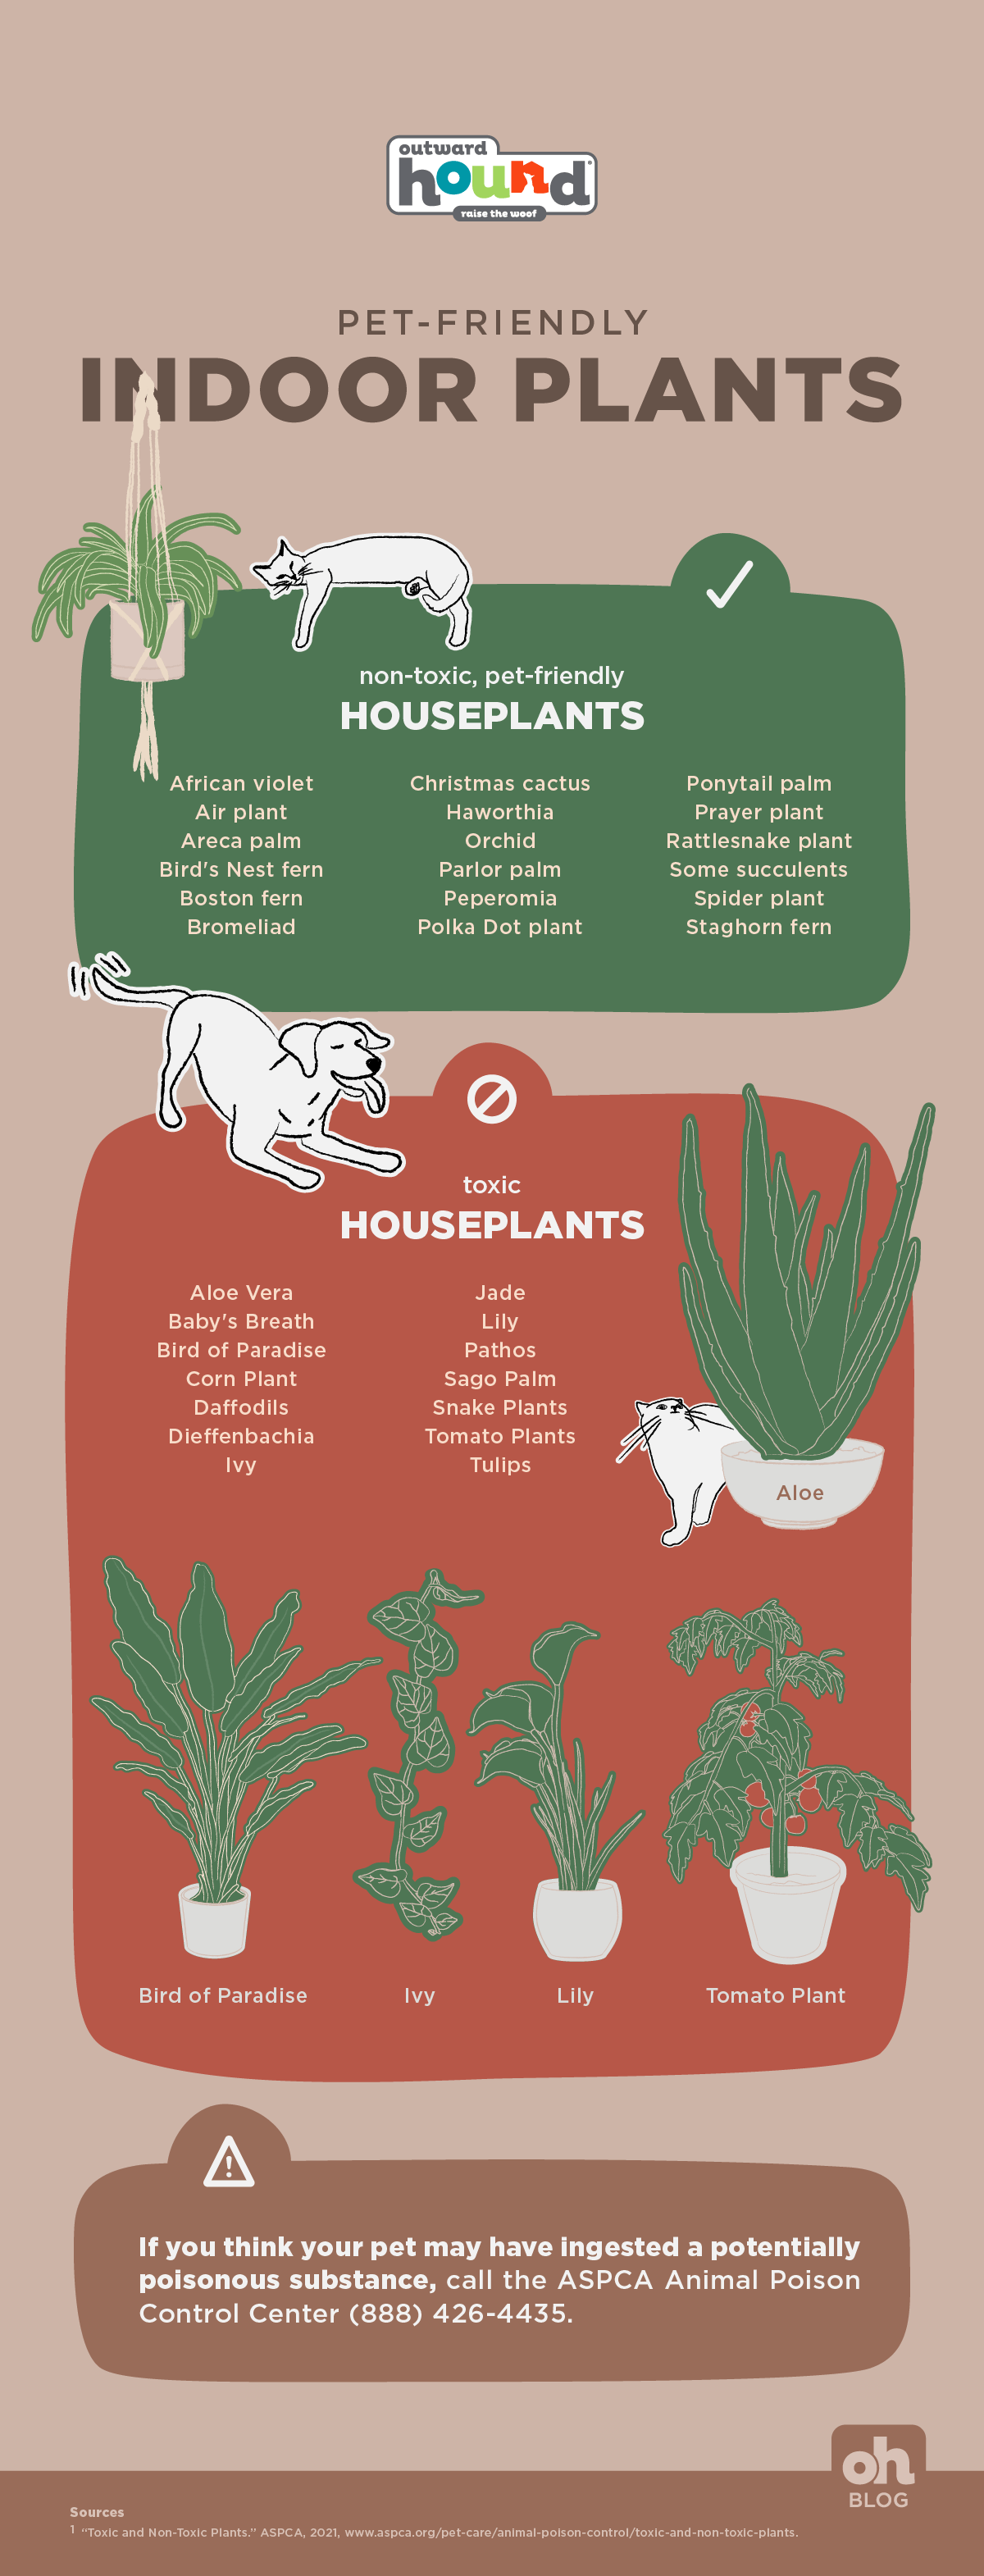 pet friendly indoor plants infographic